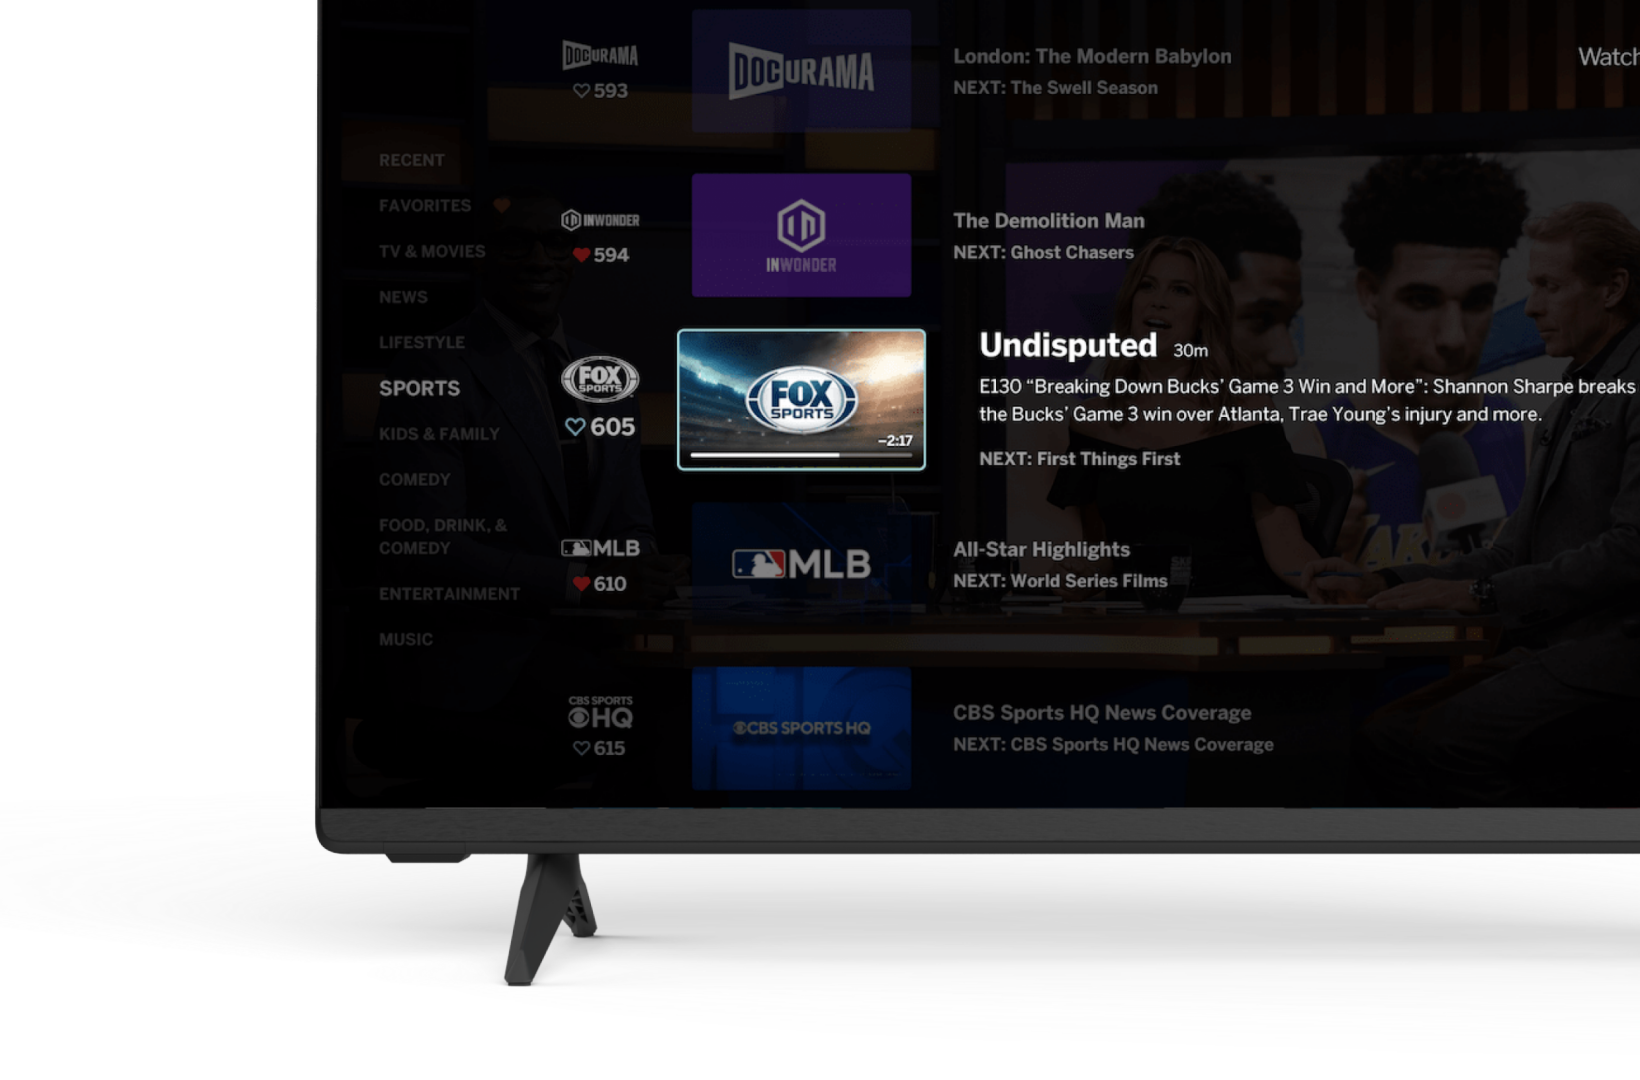 VIZIO - Smart TV Full HD 1080p de 24 pulgadas con Apple AirPlay y  Chromecast integrados, compatibilidad con Alexa, D24f-J09, modelo 2022